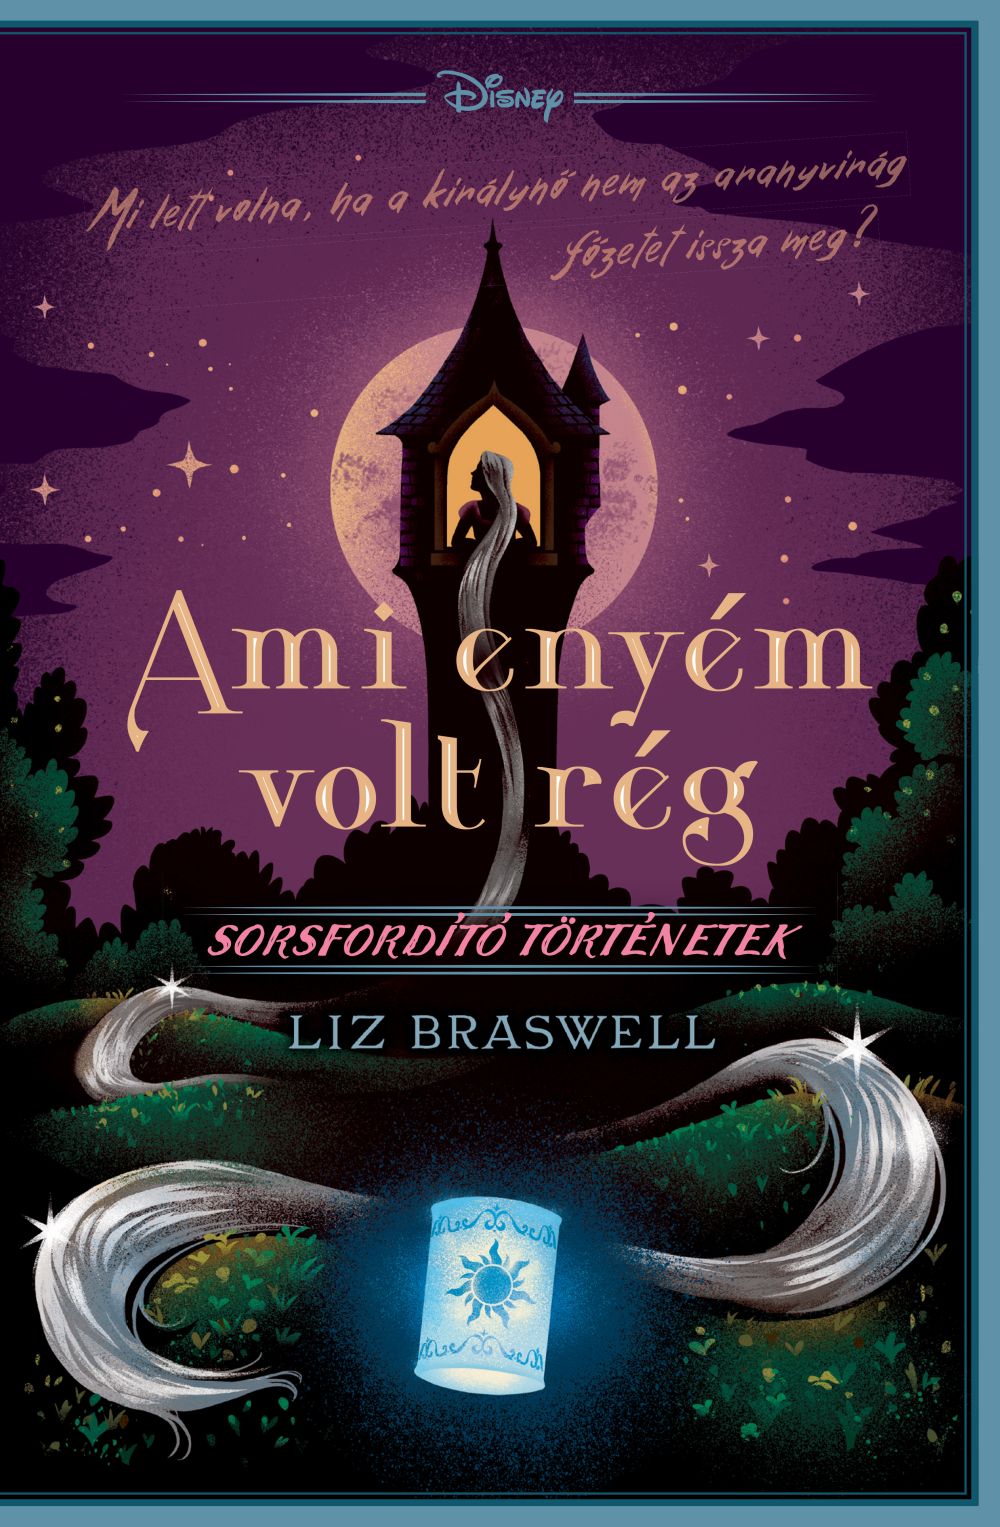 Liz Braswell - Disney - Sorsfordító történetek - Ami enyém volt rég